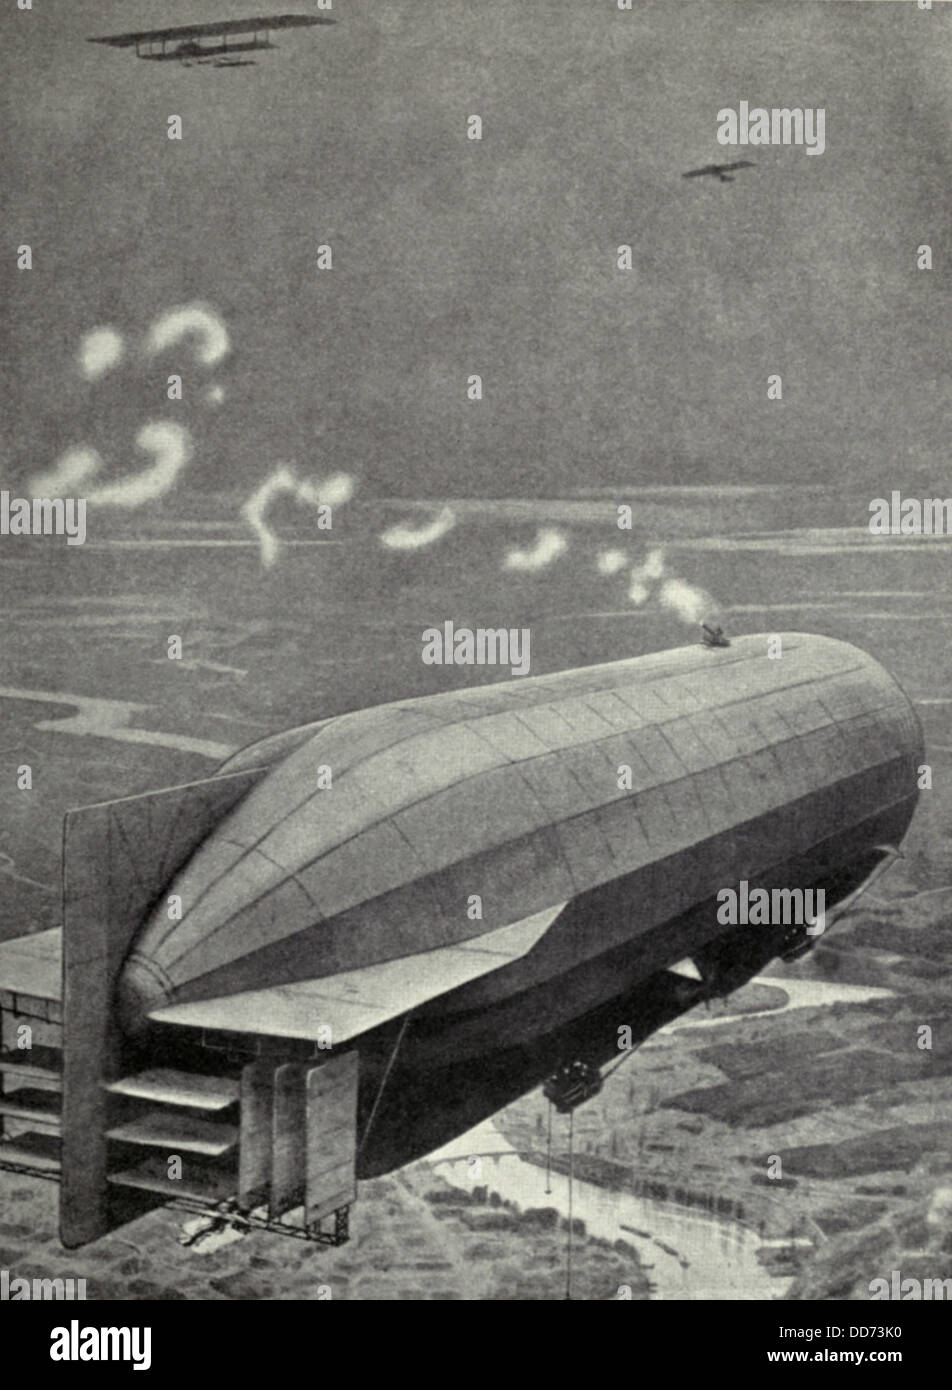 WW1 deutschen Zeppeline montiert Waffen auf ihre Körper zur Abwehr von Flugzeugen. 1915. britischen Jäger angegriffen Zeppeline mit Stockfoto